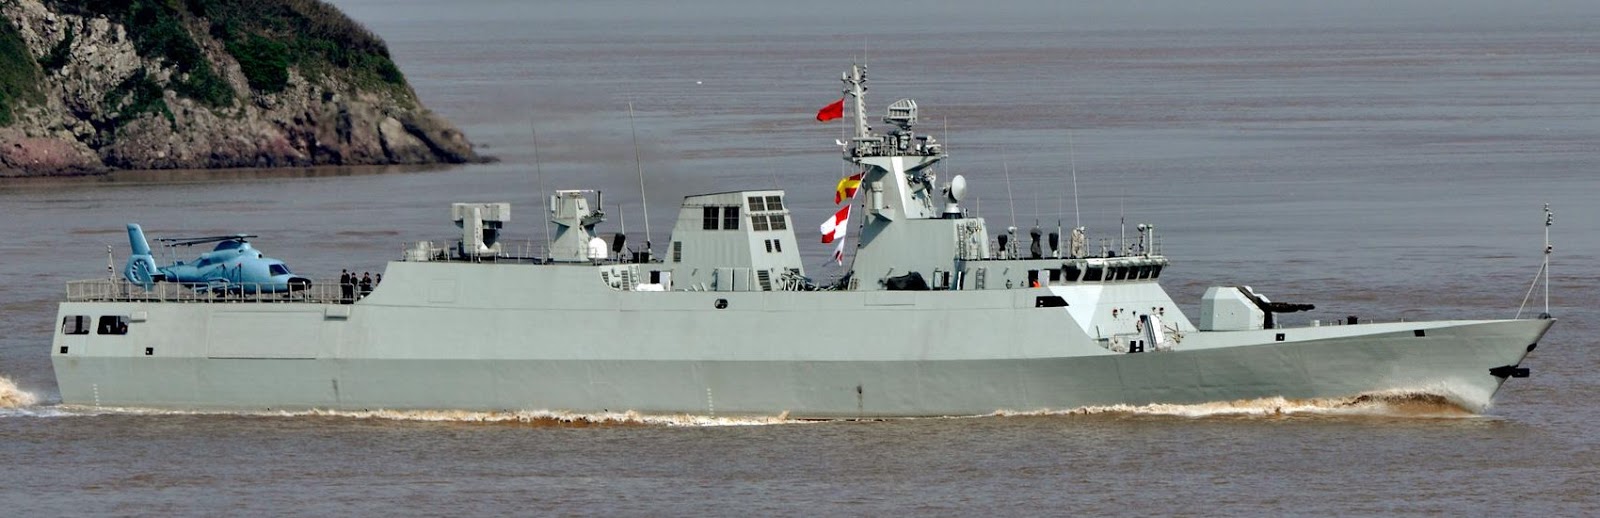 angkatan-laut-cina-menambah-korvet-tipe-056-ke-23nya